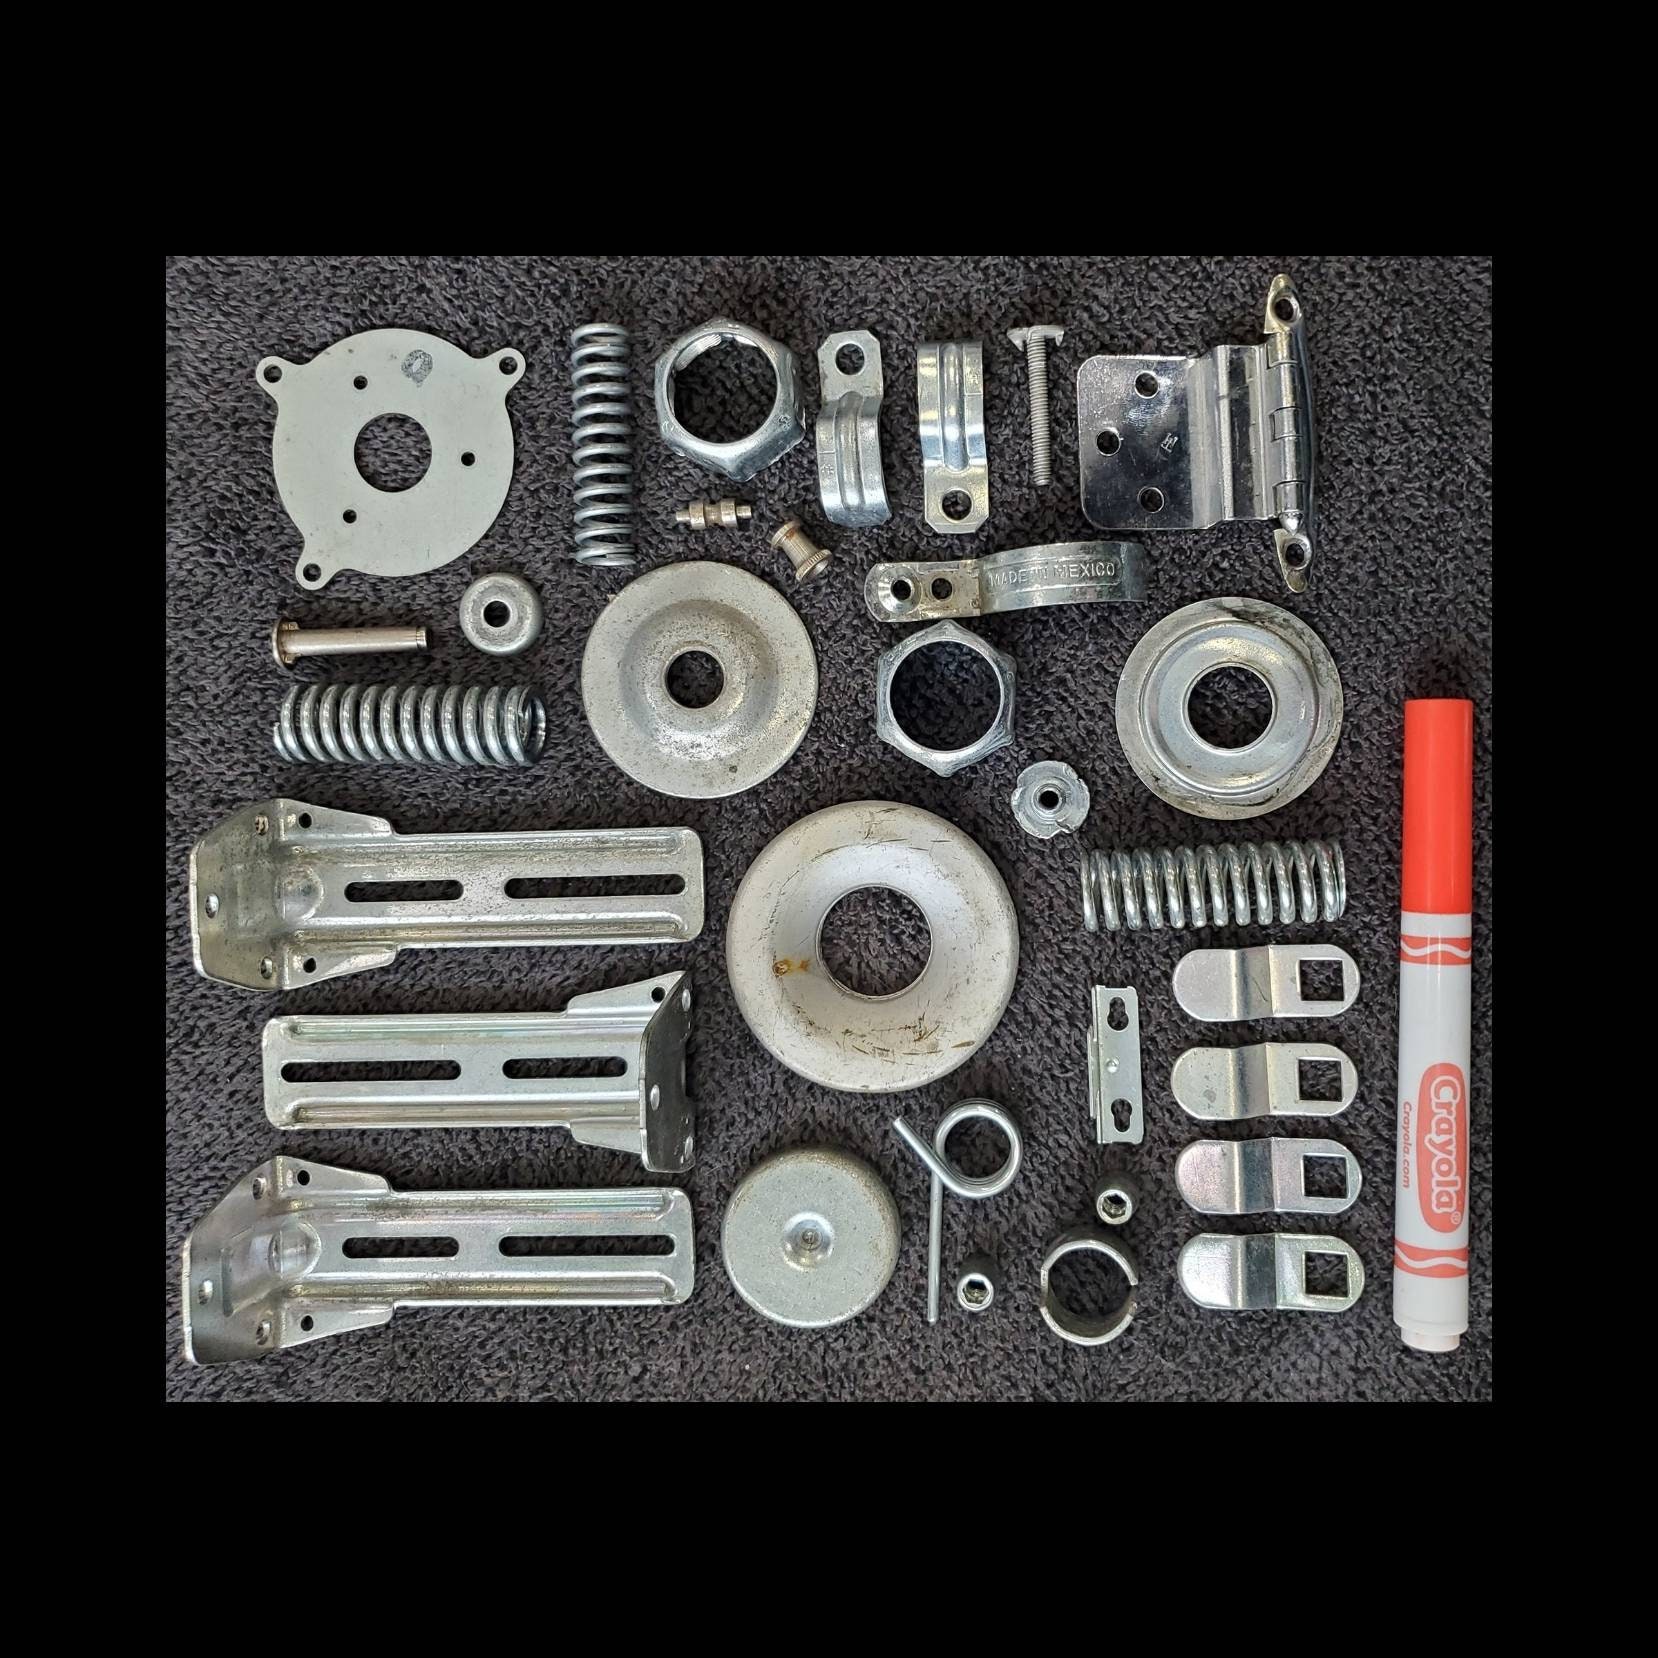 Mixed Lot of 52 Random Metal Parts, Craft Supplies, Robot Parts, Electronic  Parts, Junk Pieces, Metal Scrap. Assemblage Materials 